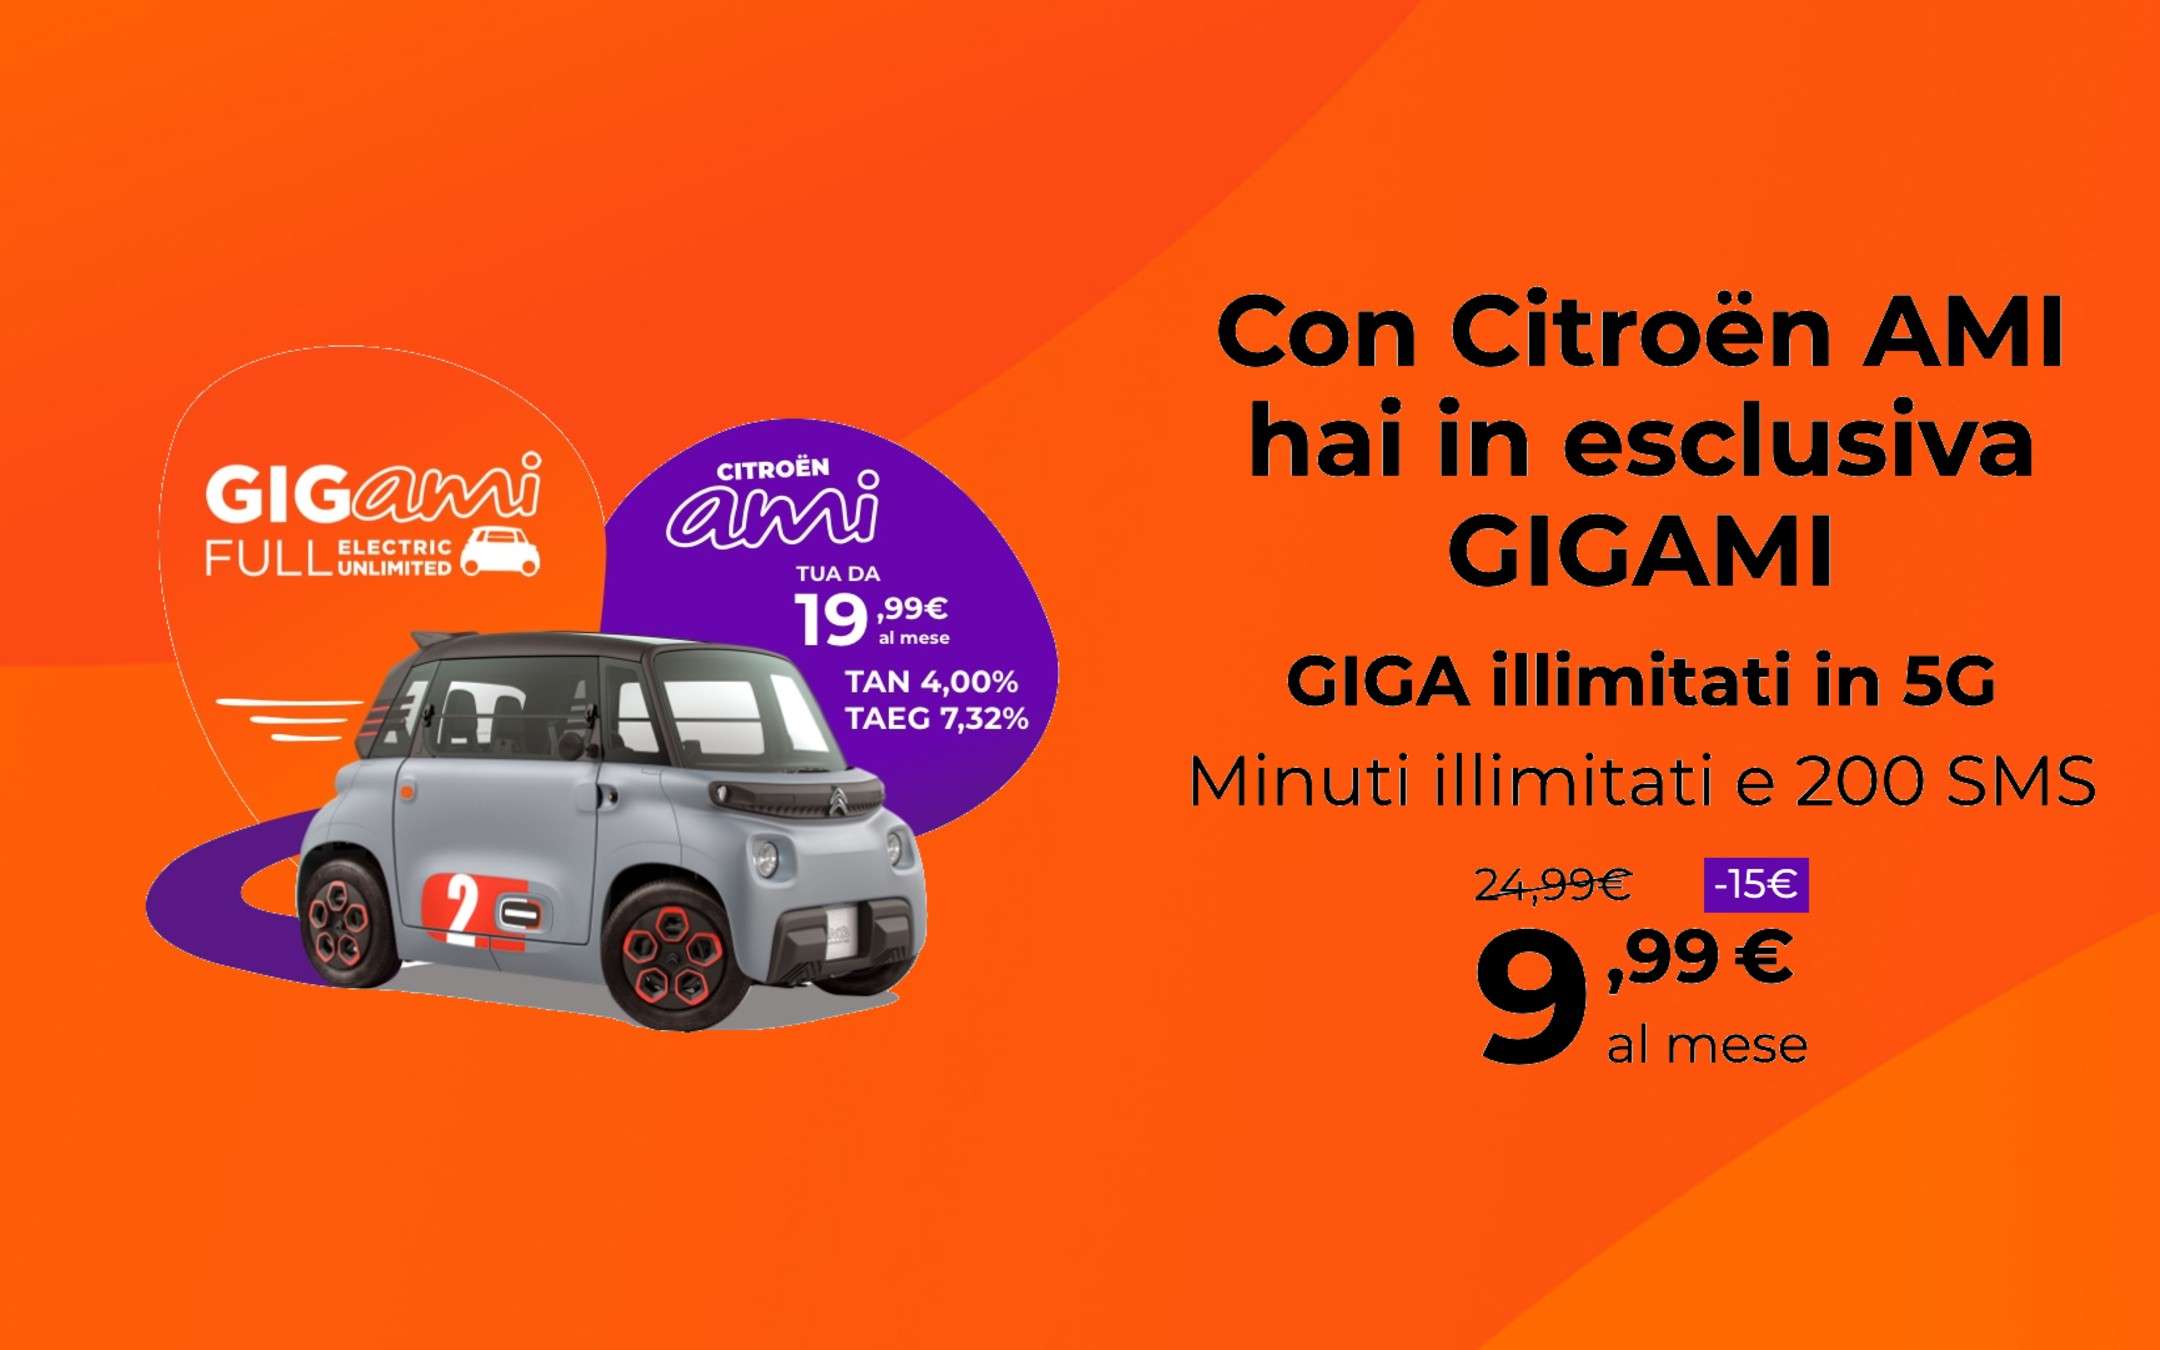 GIGAMI: Giga Illimitati con Citroën AMI a 9,99€